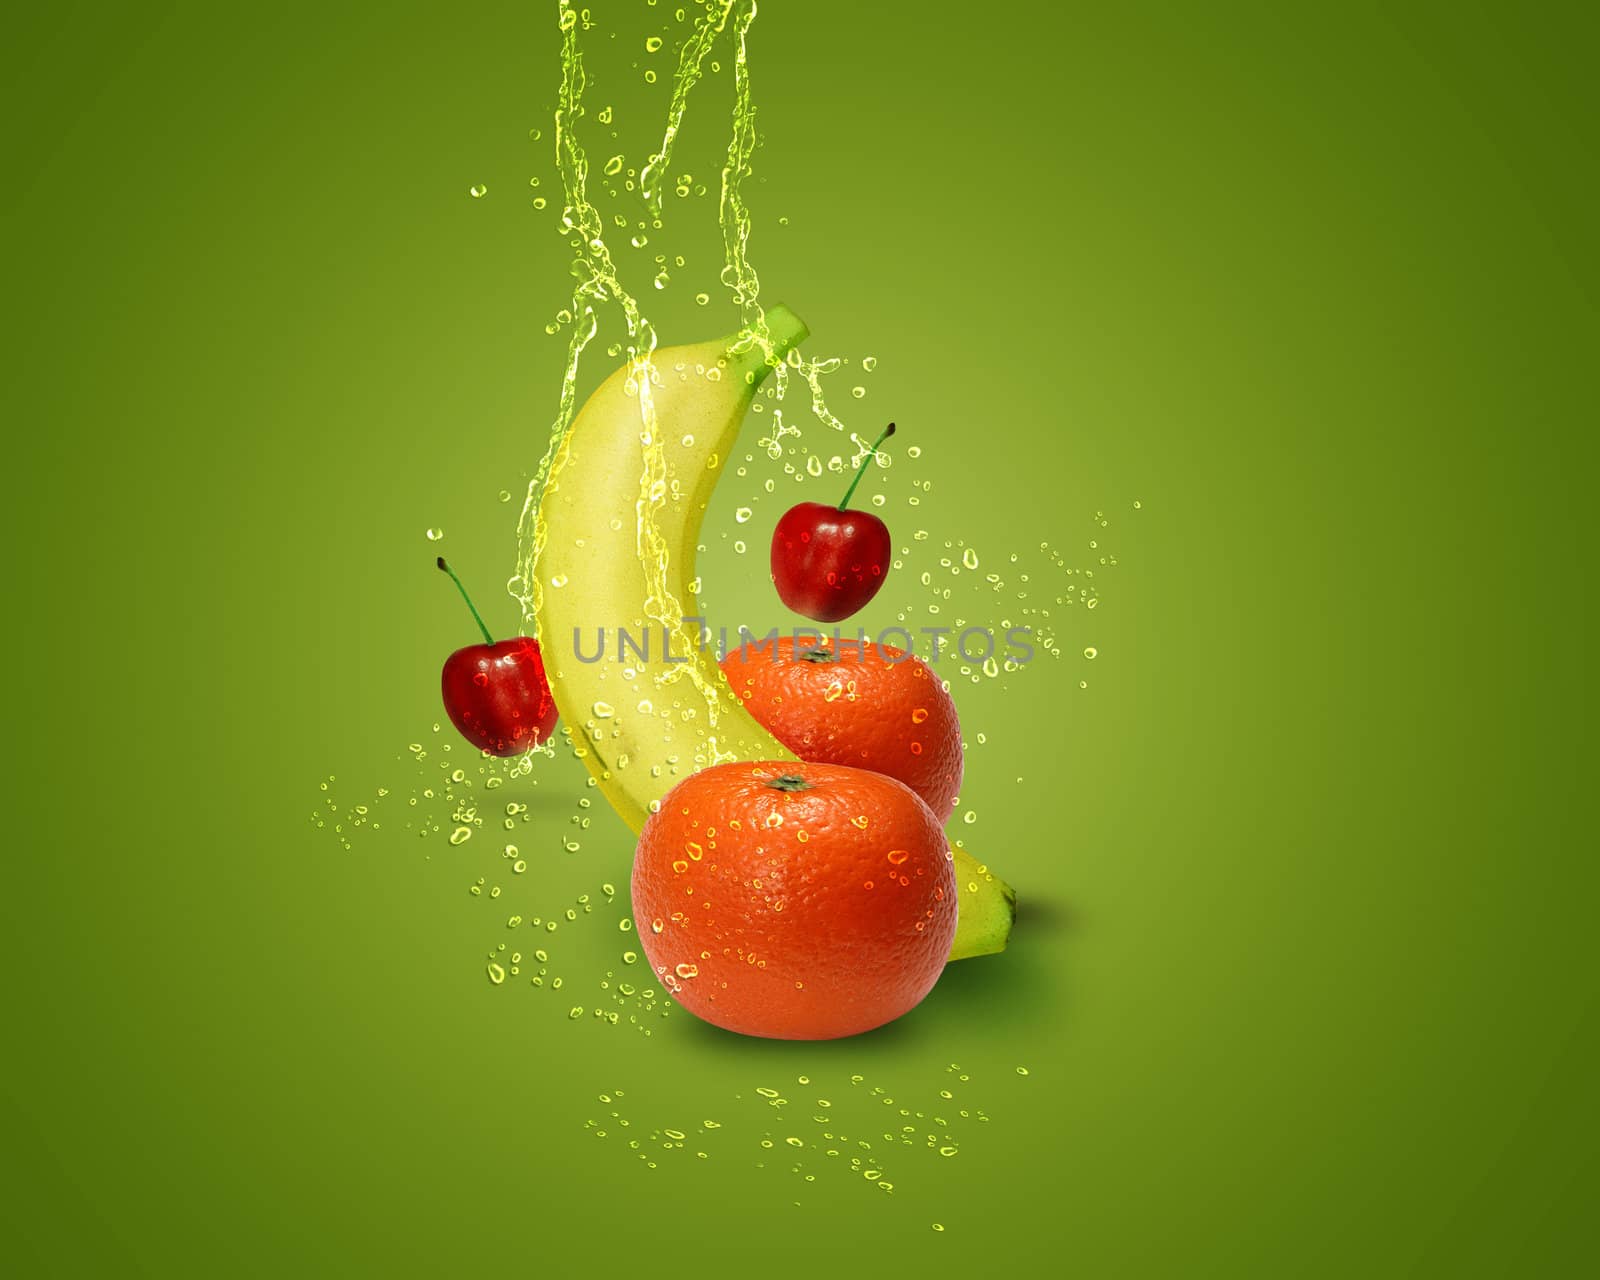 Fresh banana, mandarins, cherry, with water splashes on green background.